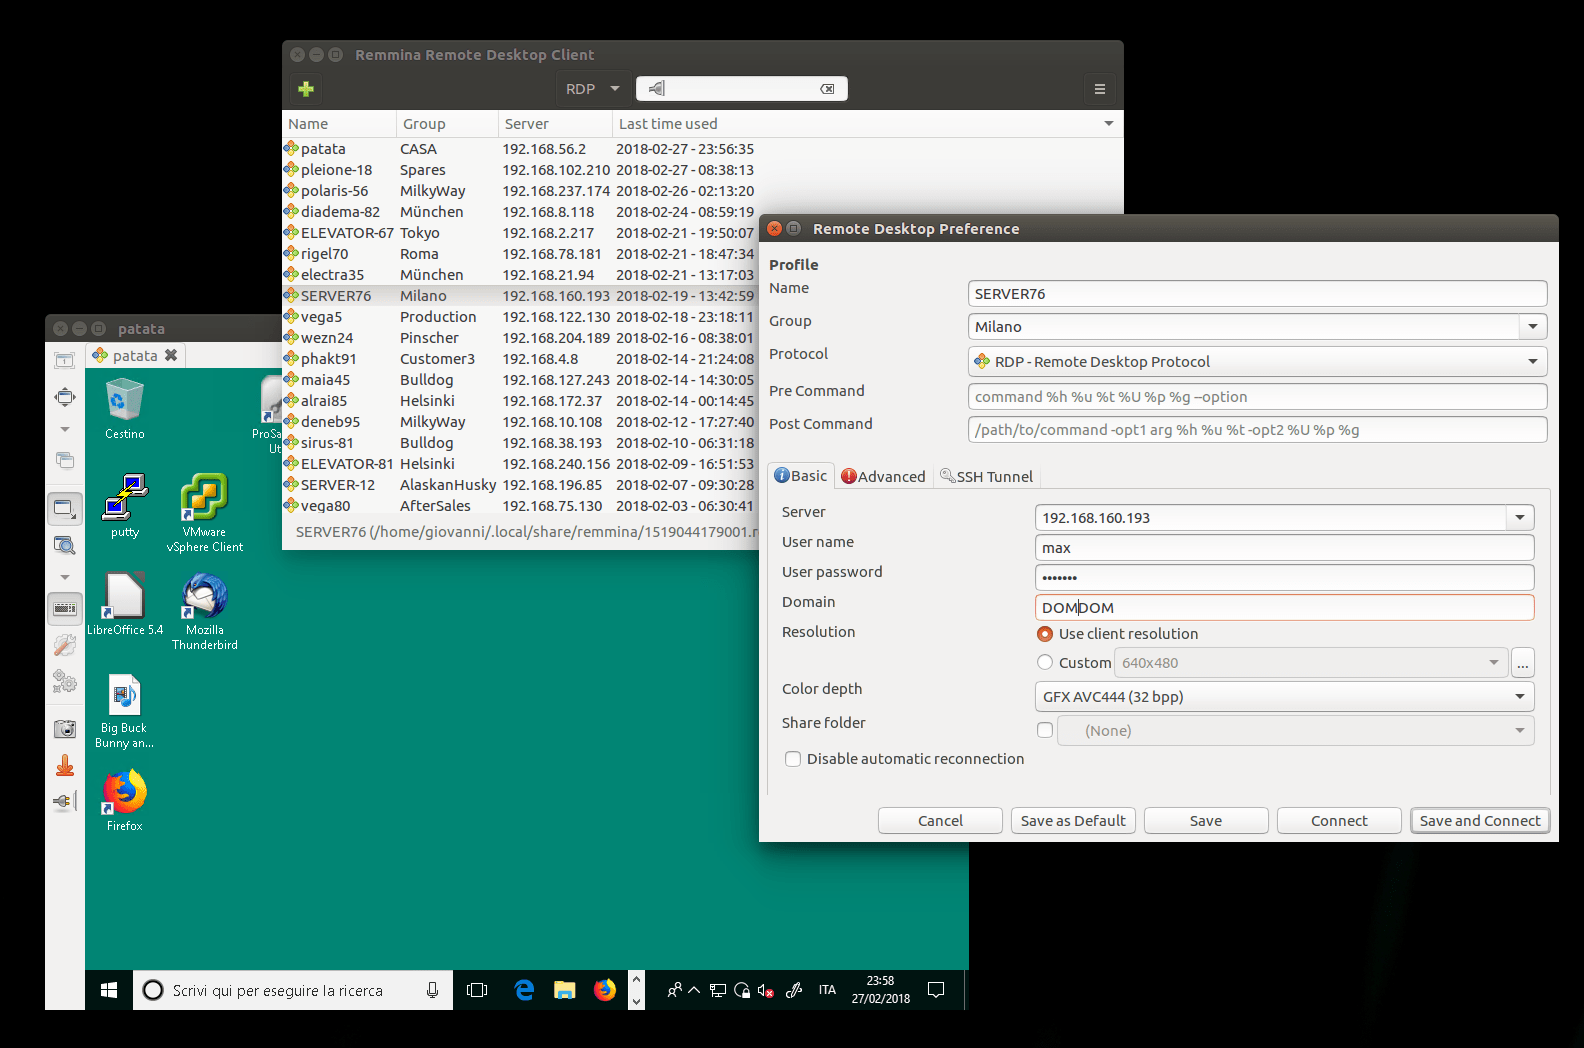 como-instalar-o-remmina-um-cliente-desktop-para-acesso-remoto-no-ubuntu-linux-mint-fedora-debian